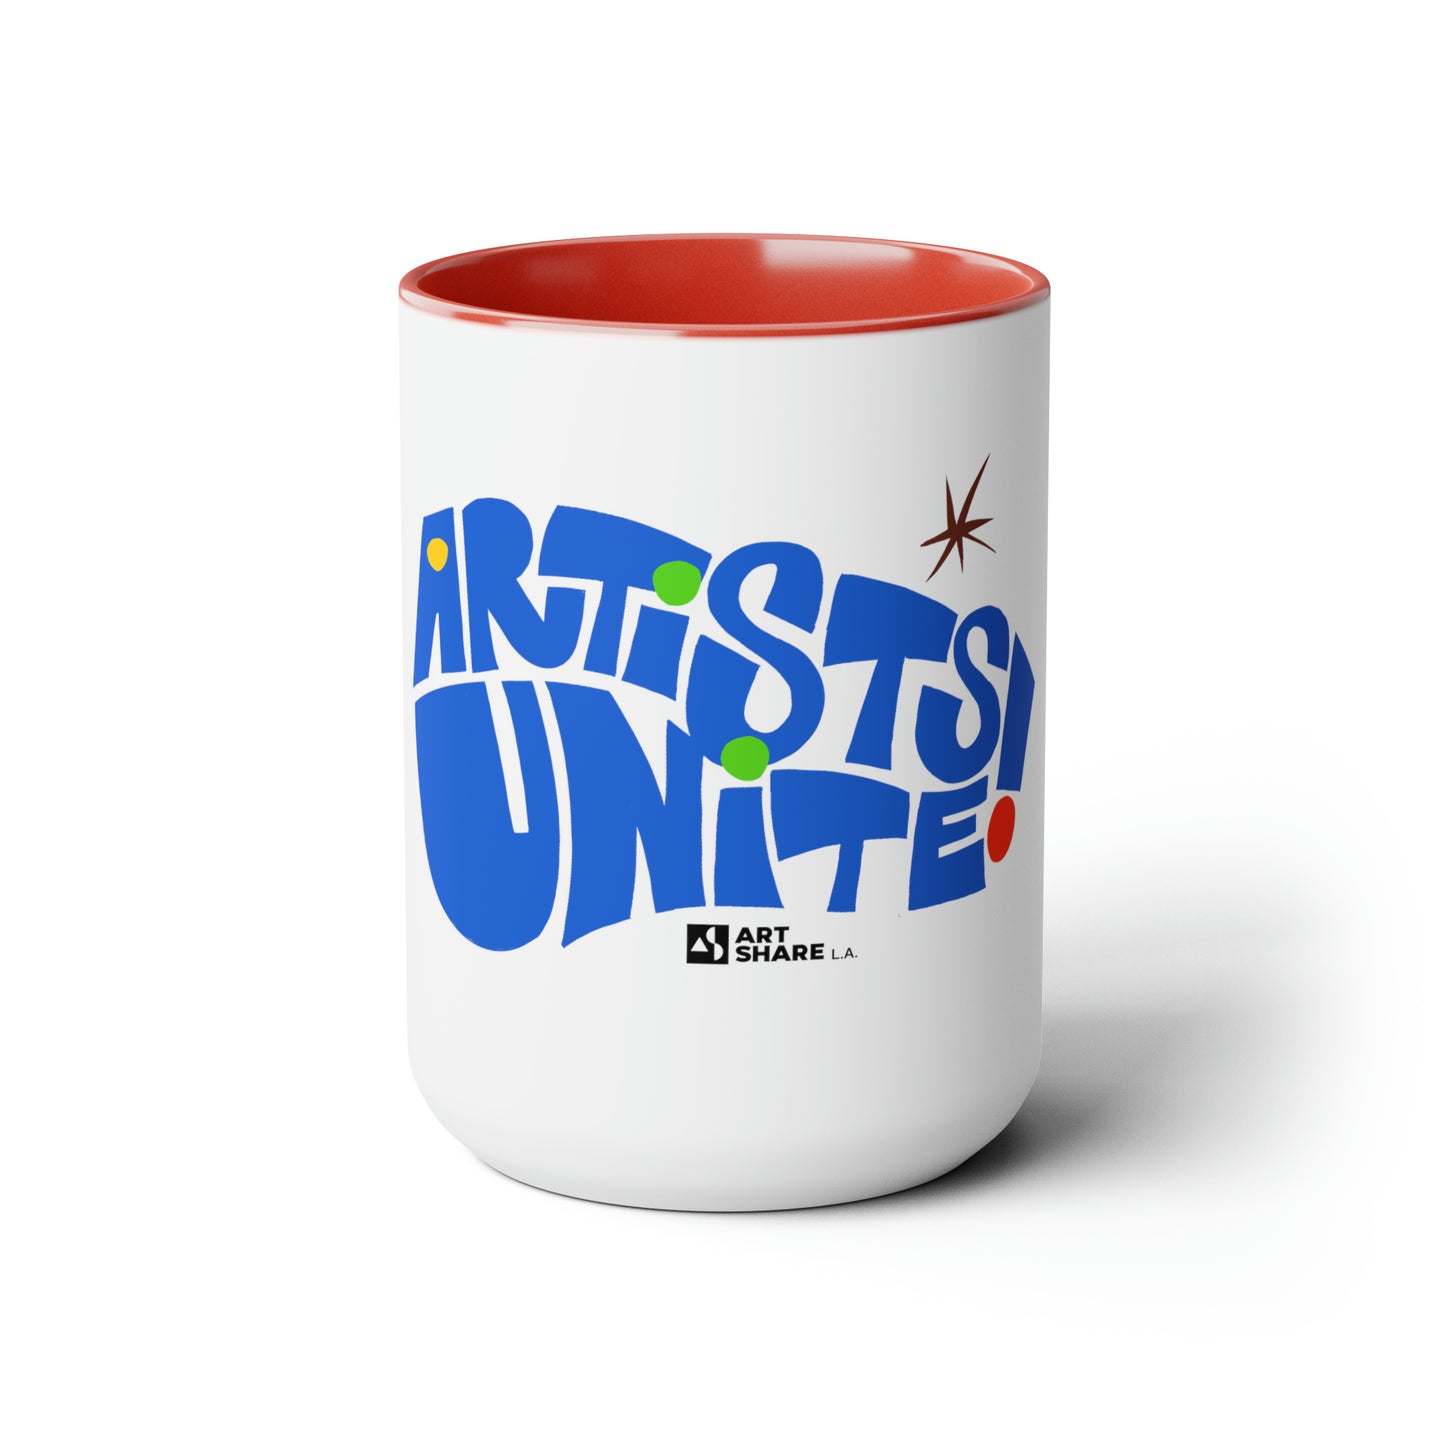 ARTISTS UNITE! Two-Tone Coffee Mugs, 15oz